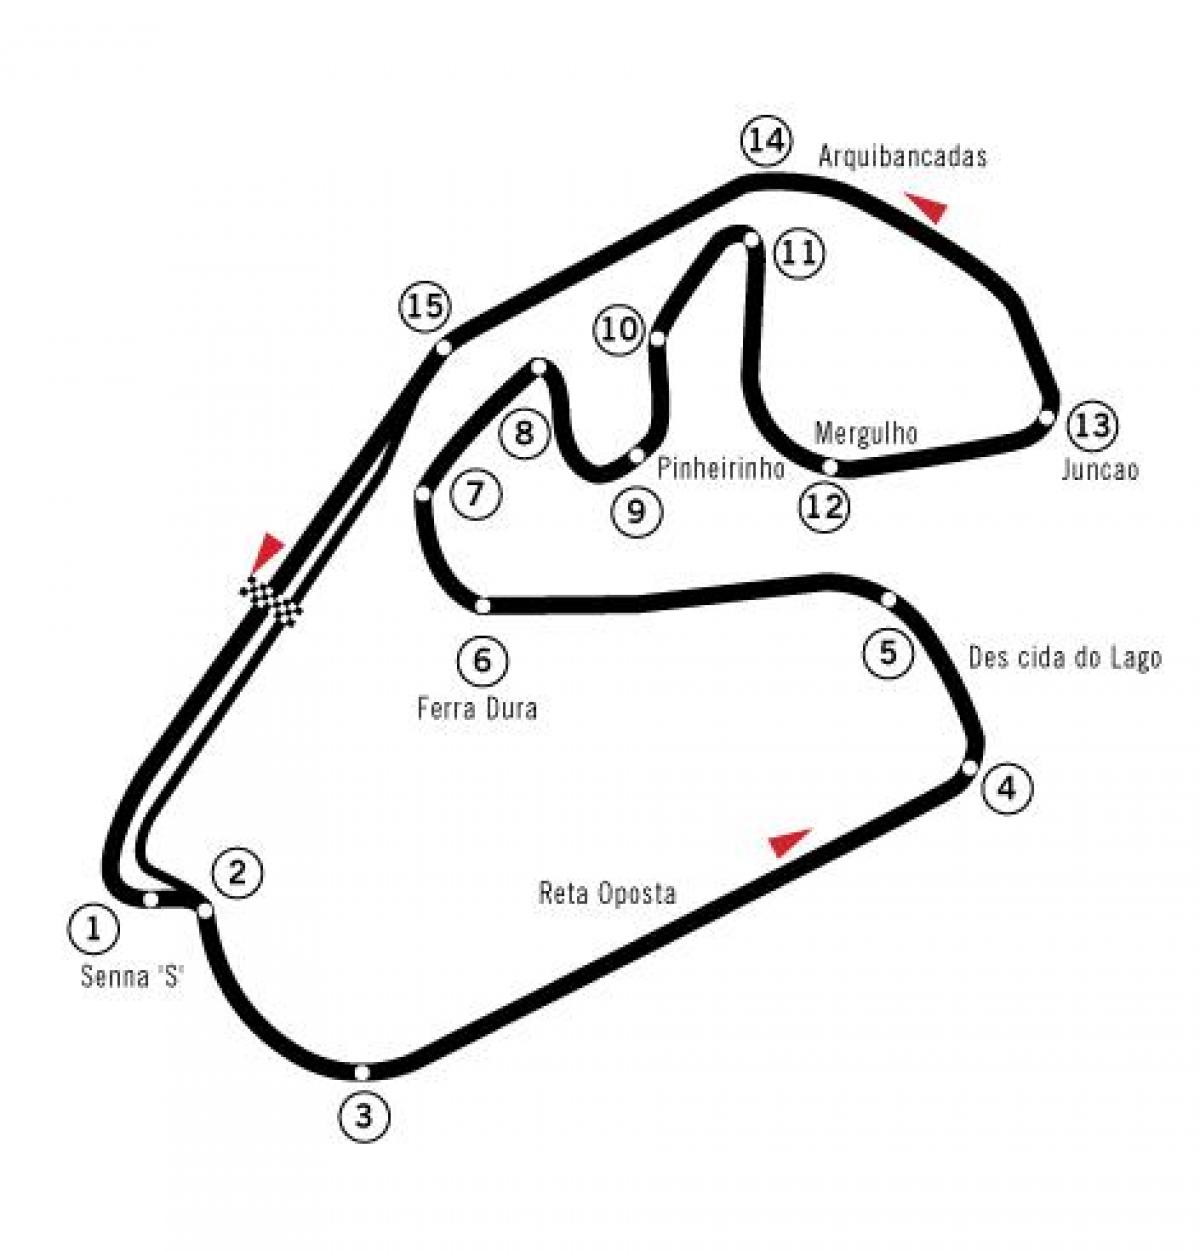 نقشه Autódromo خوزه کارلوس سرعت